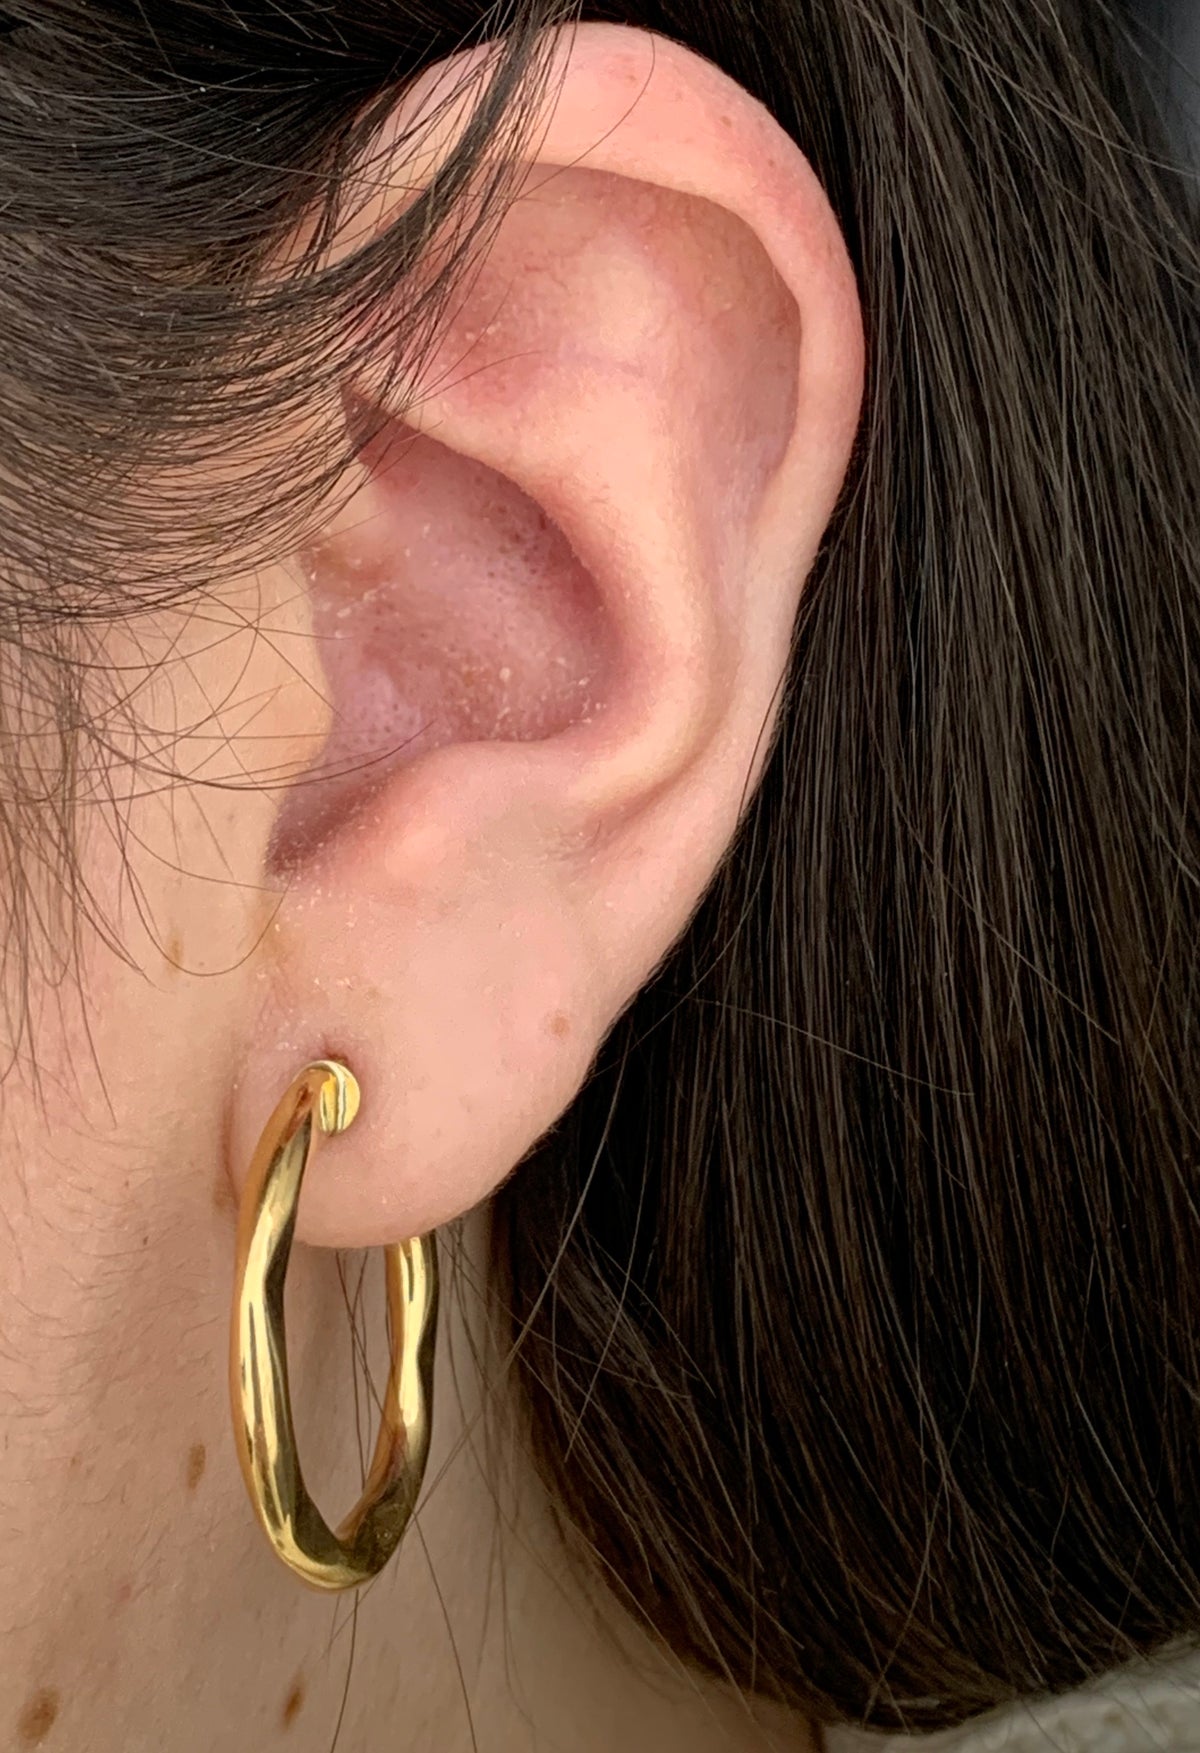 10KY Hoop Earrings